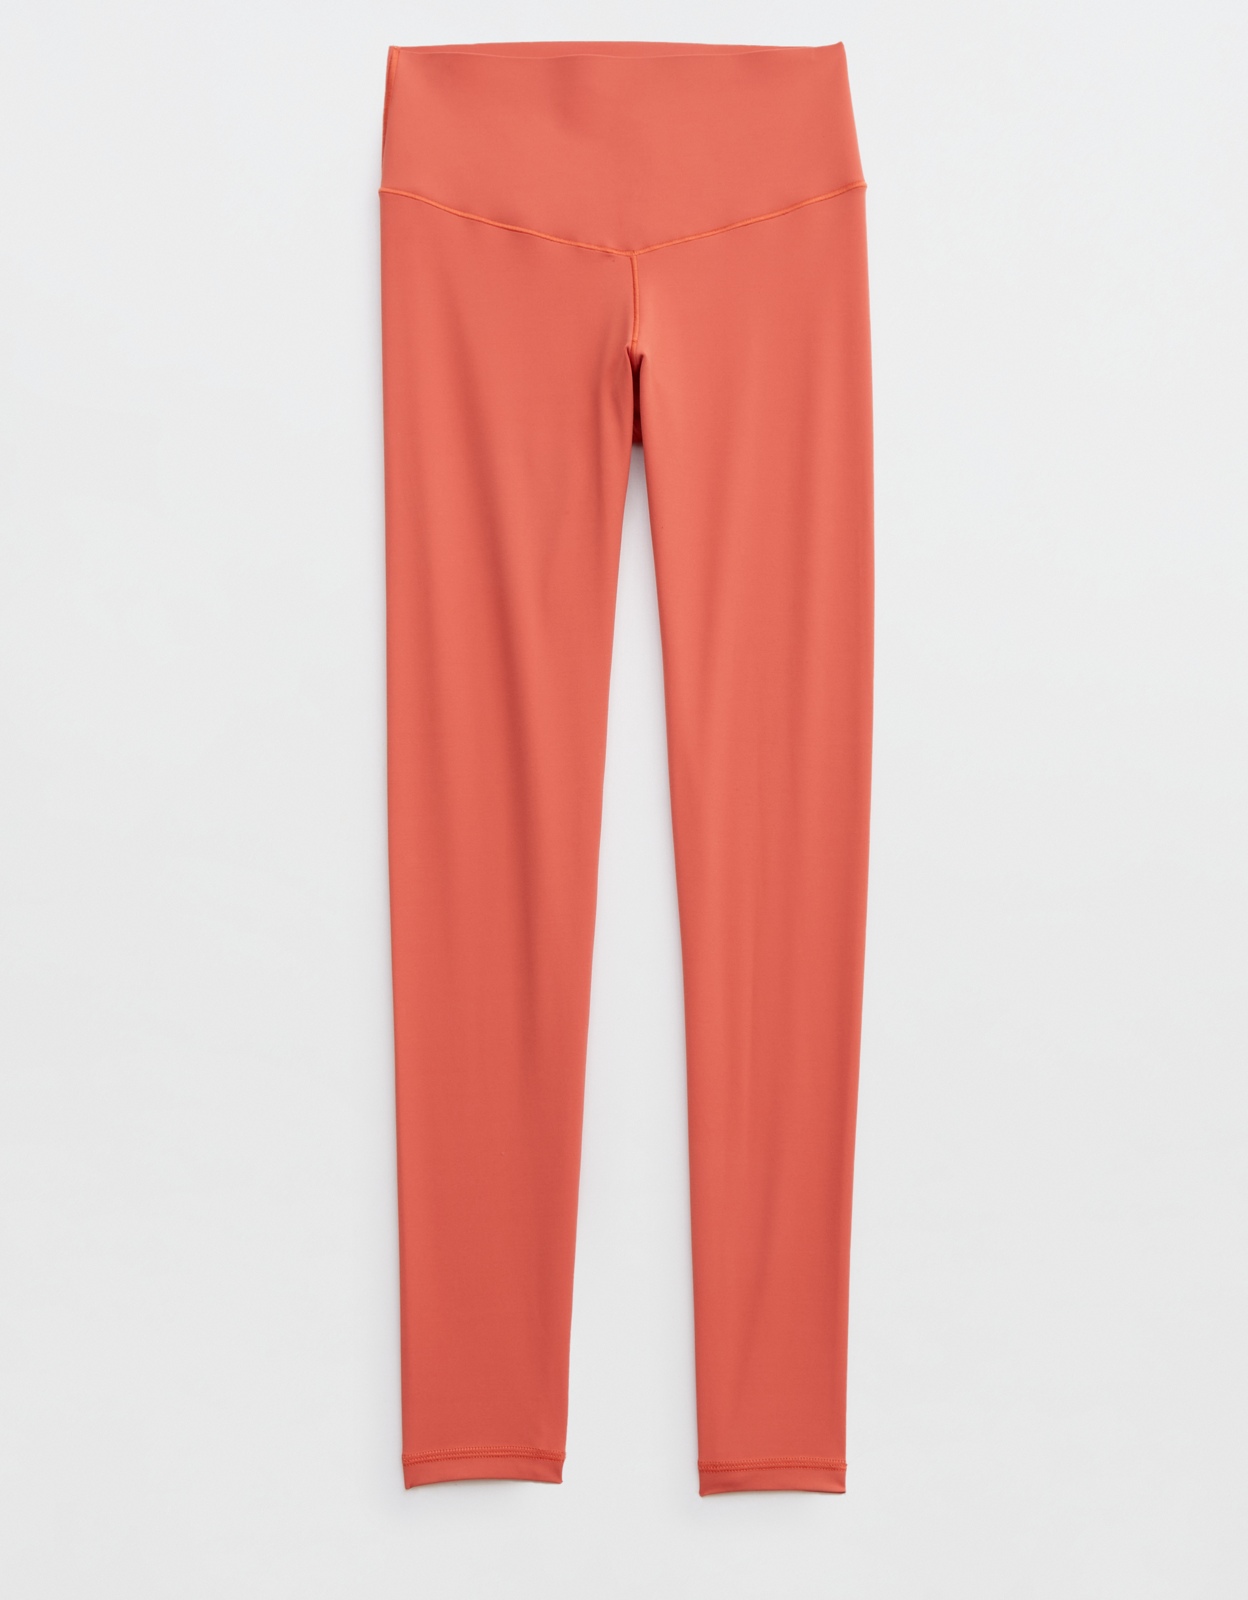 OFFLINE by Aerie Tie-dye Orange Leggings Size M - 59% off